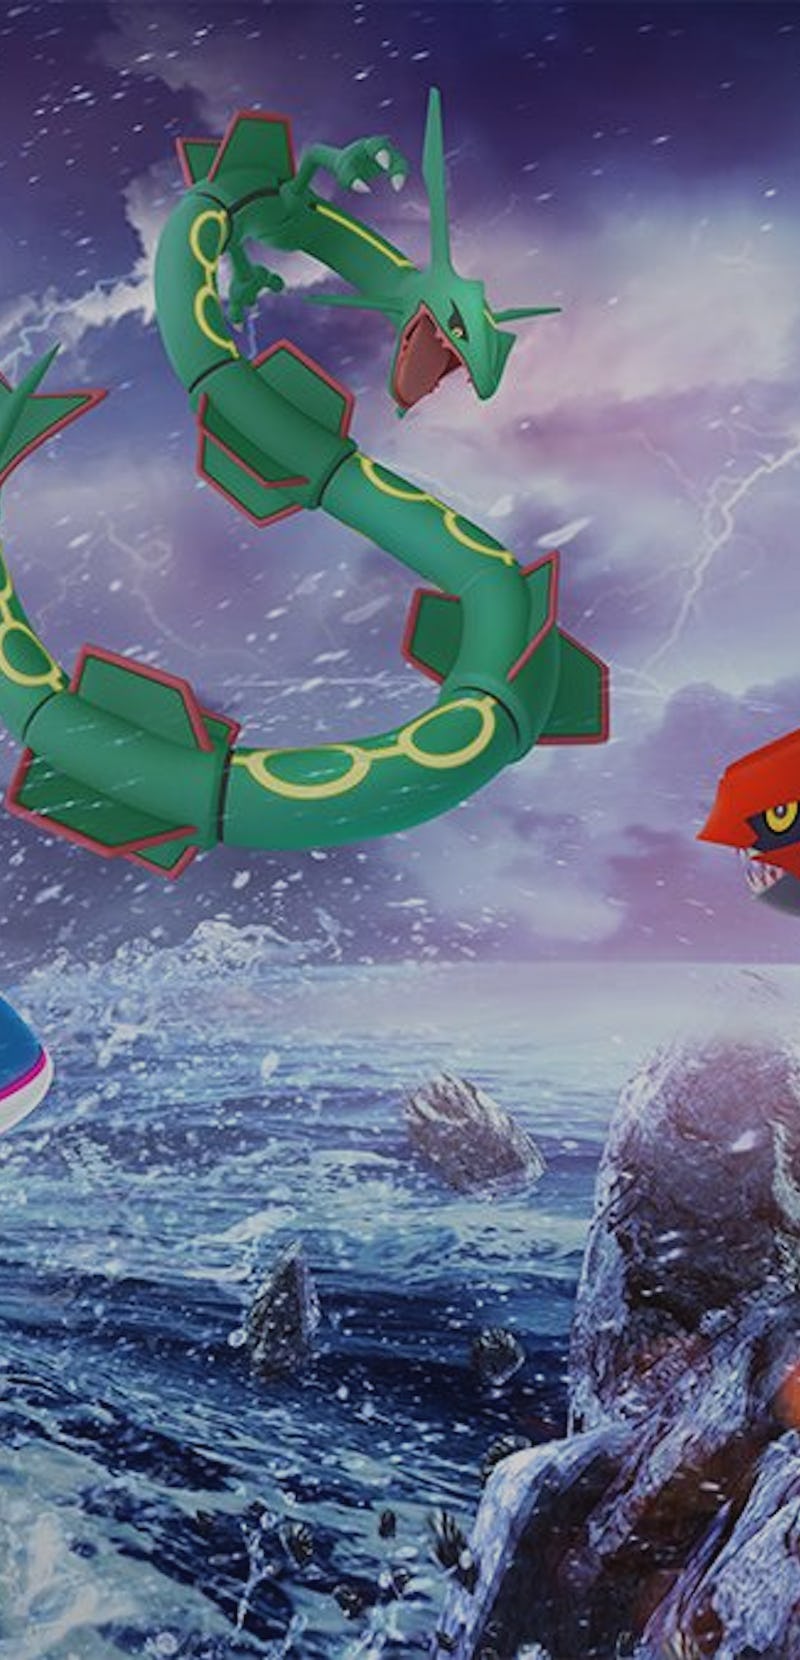 Rayquaza Legendary Pokémon in Pokémon Go promo art